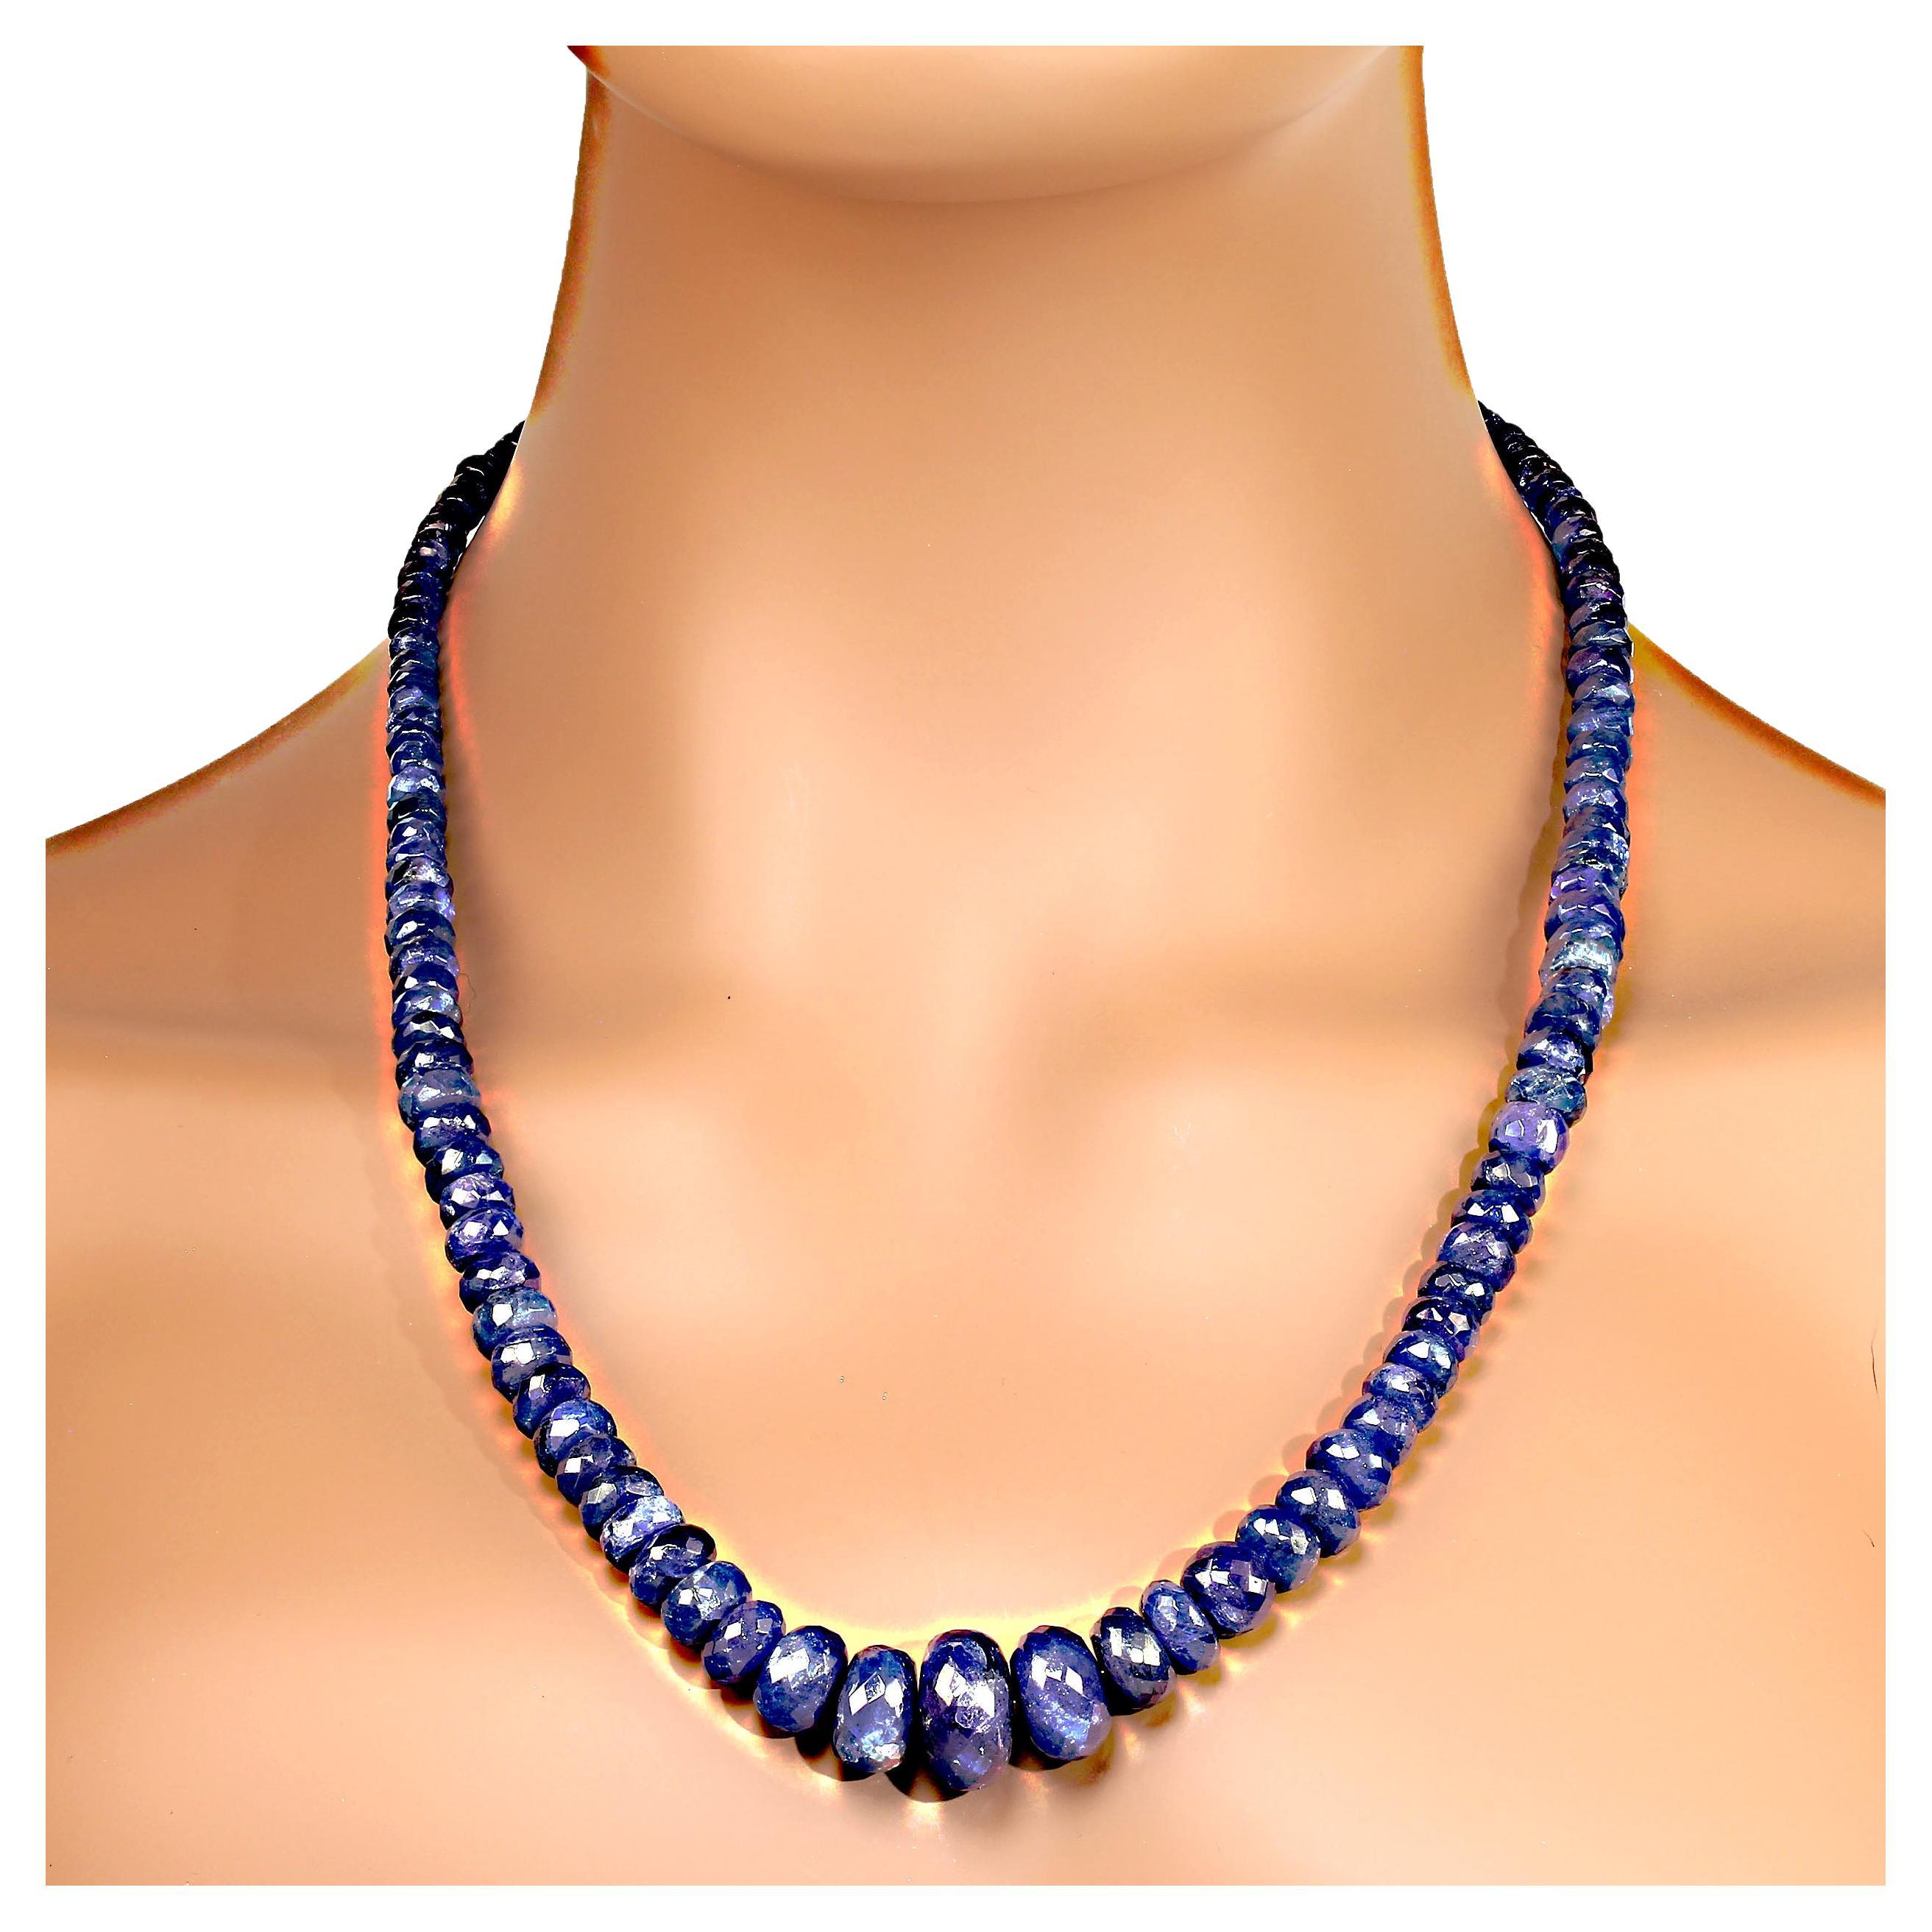 23 Zoll durchscheinende Tansanit-Halskette mit Karabinerverschluss und Diamantchips. Diese hübsche Halskette besteht aus facettierten, abgestuften (5-17 mm) Rondellen mit der unverwechselbaren violettblauen Farbe des Tansanits.  MN2360